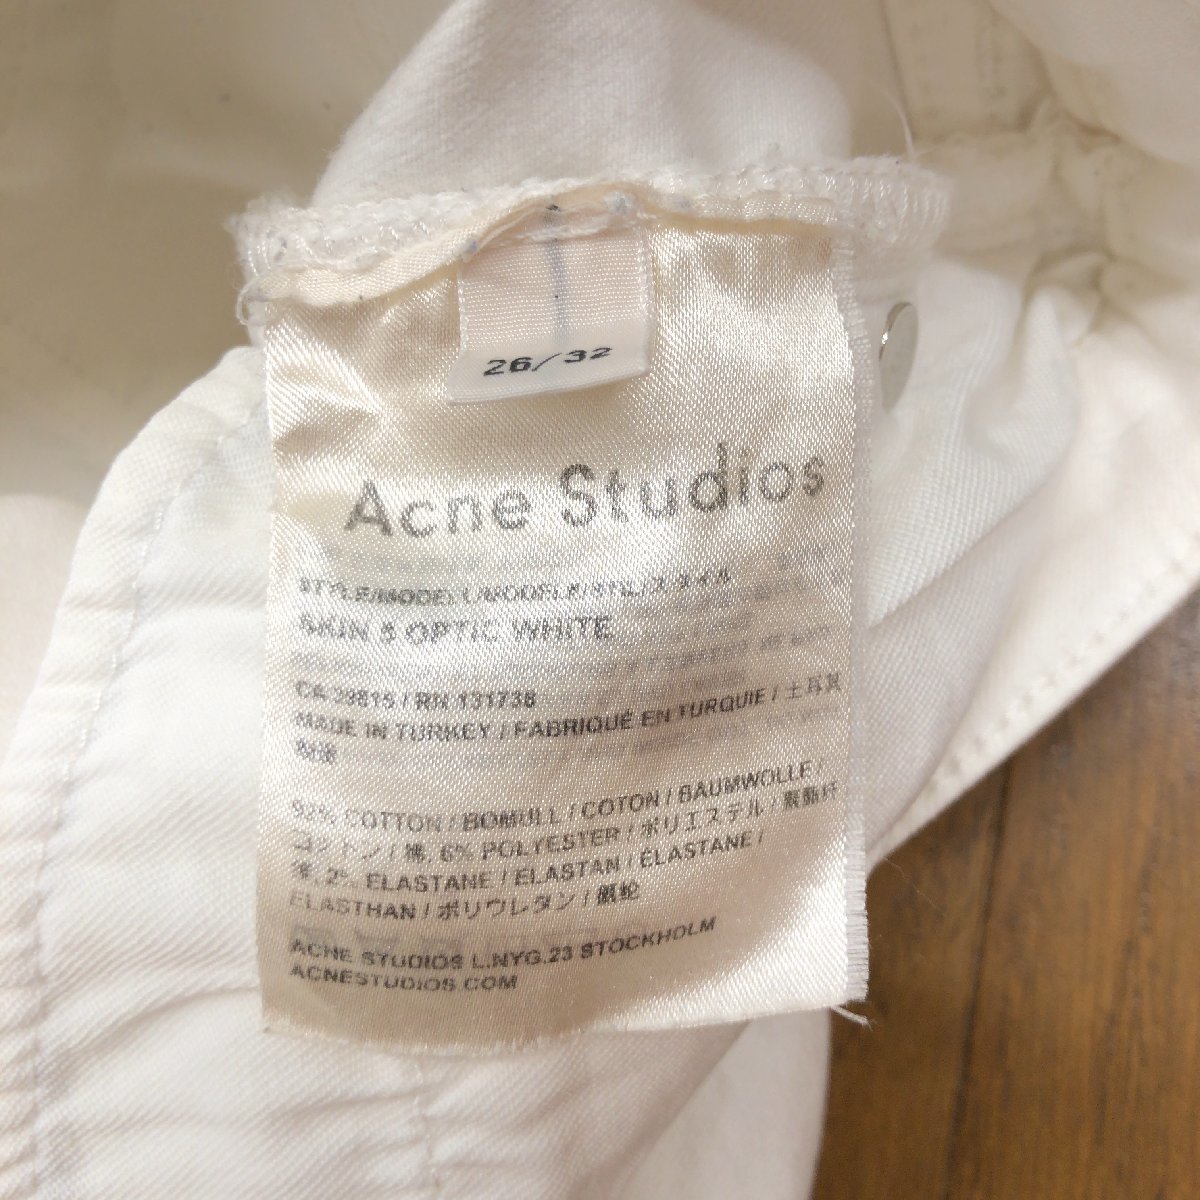 Acne Studios アクネストゥディオズ ストレッチ カラーデニム パンツ 26 w70 白 ホワイト 白パン レディース 女性用_画像6